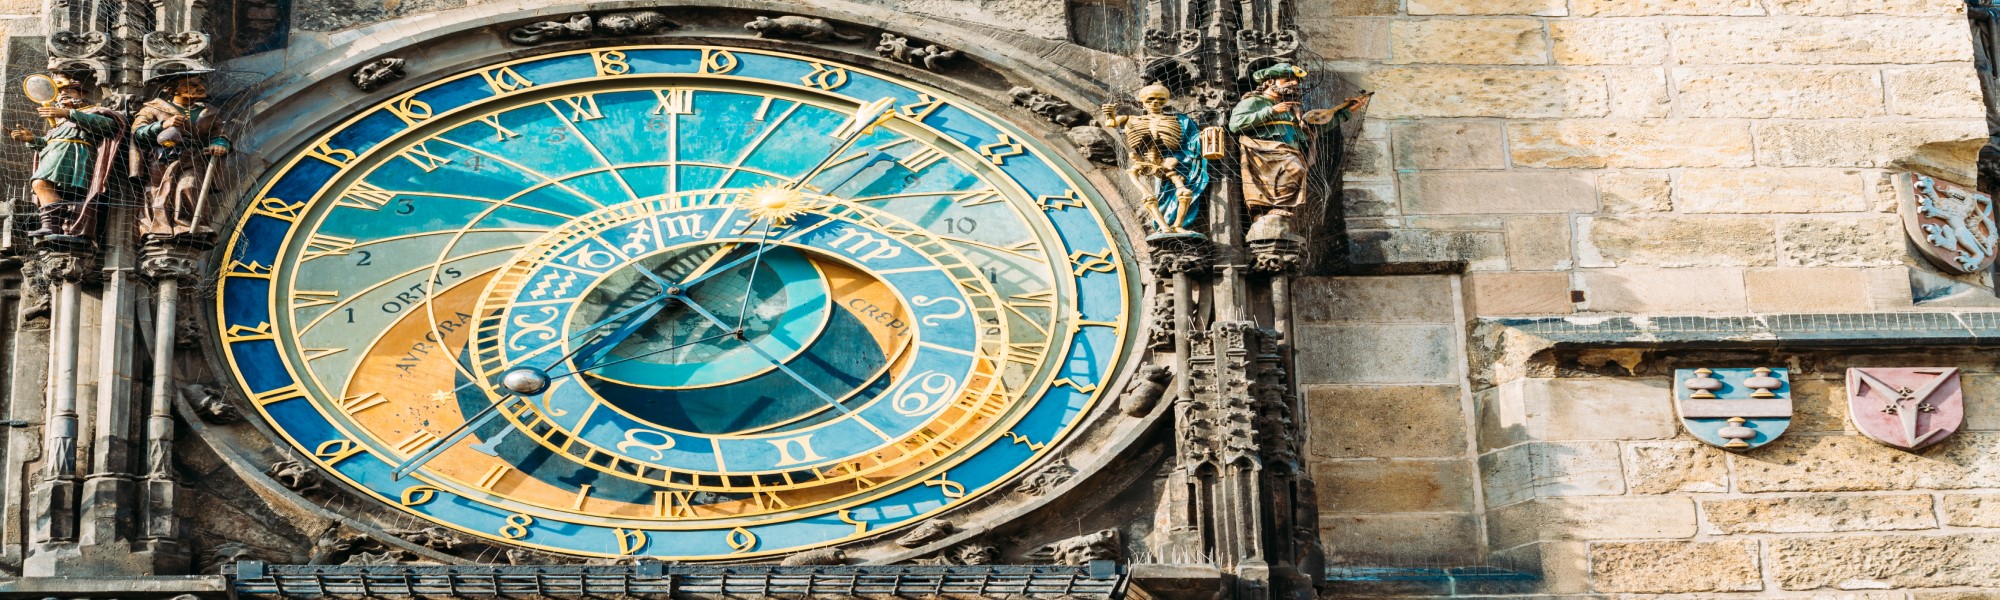 Reloj astronómico de Praga Mediviatges